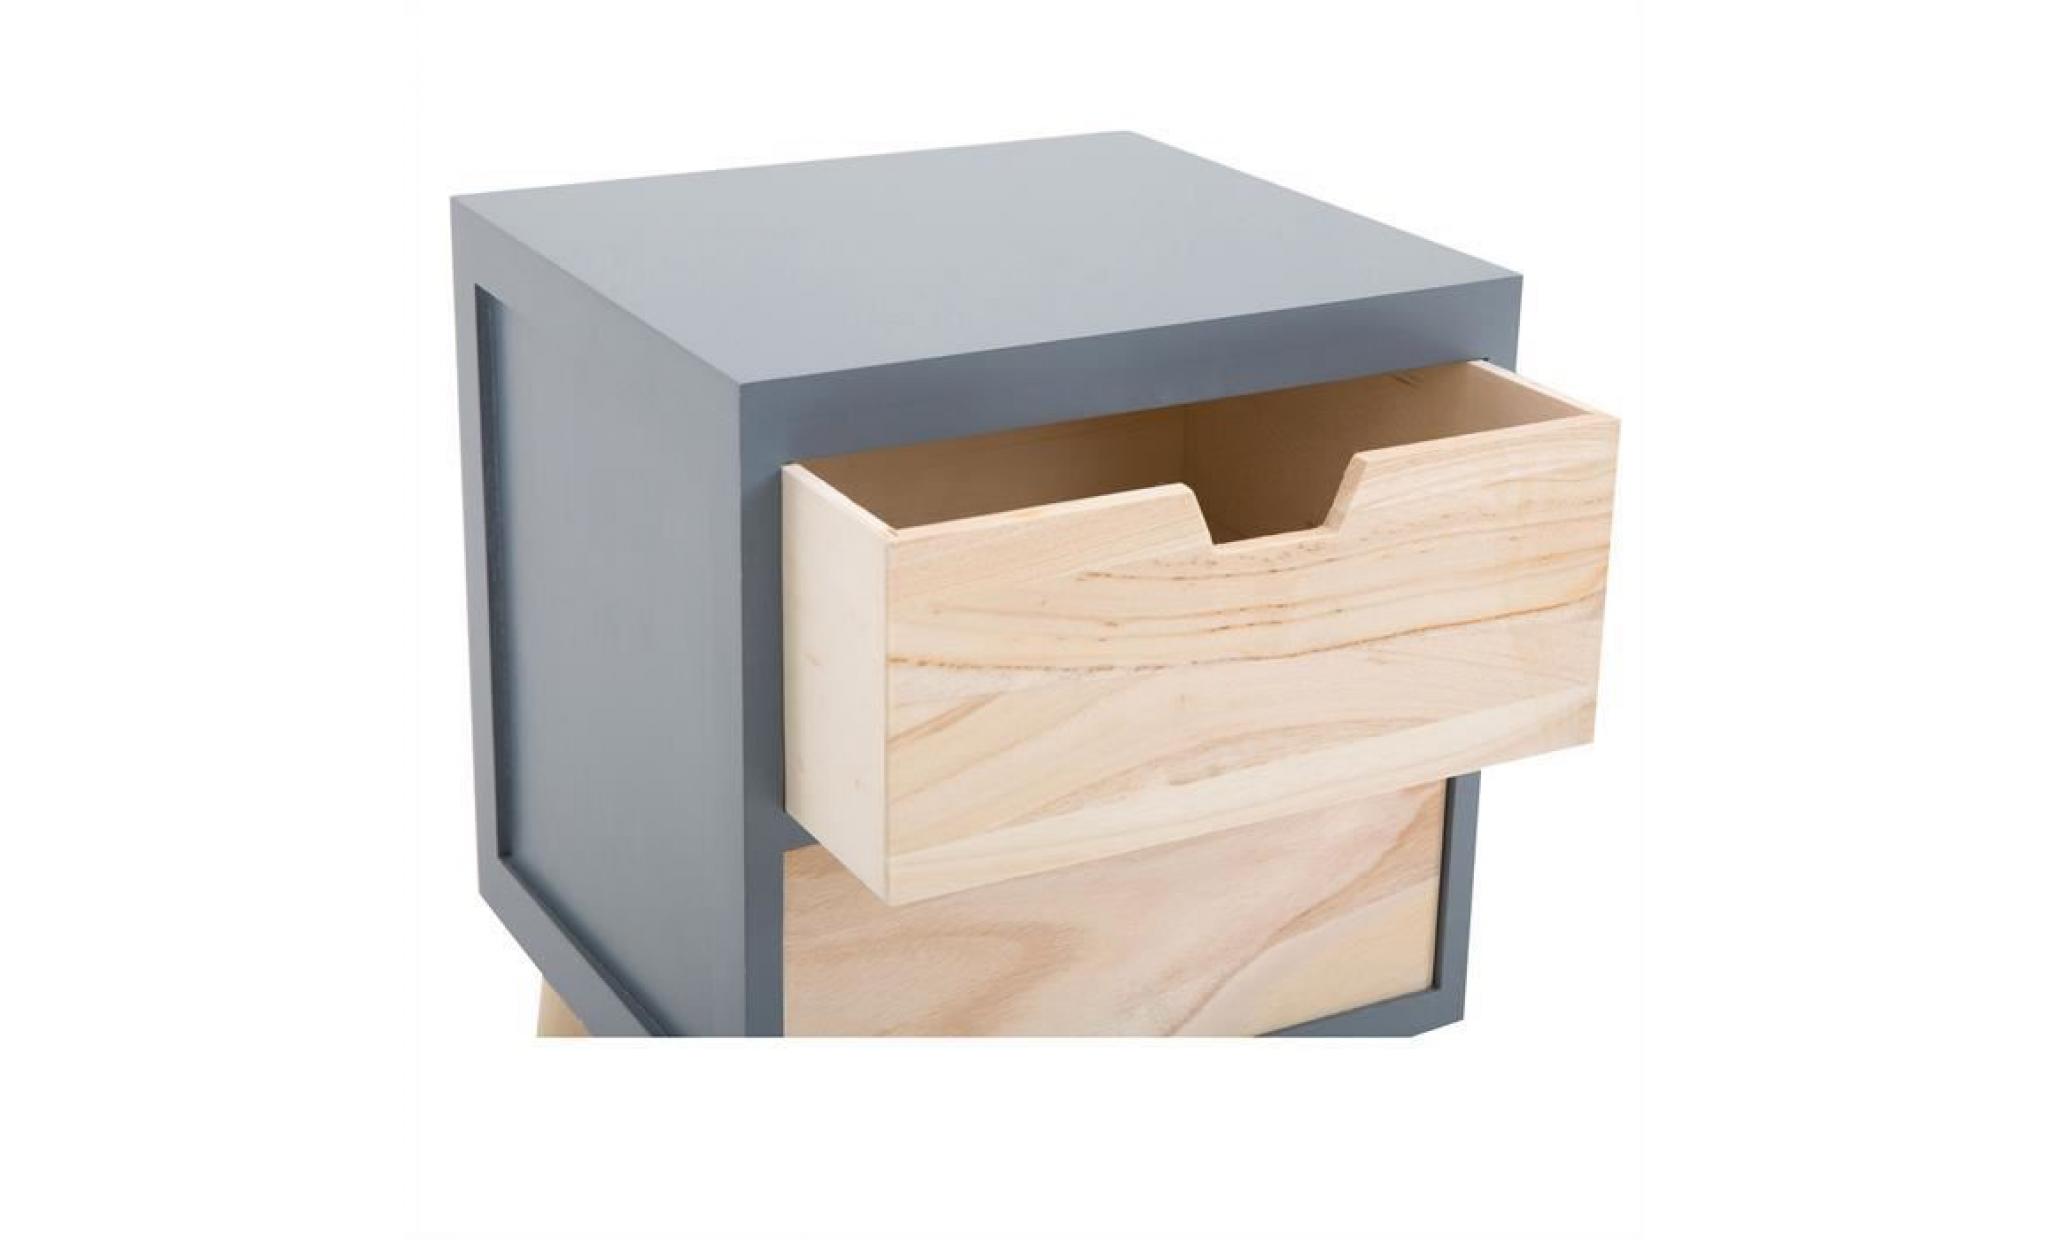 table de chevet bahia meuble de nuit avec 2 tiroirs en bois de paulownia style vintage rétro scandinave, coloris gris et bois pas cher